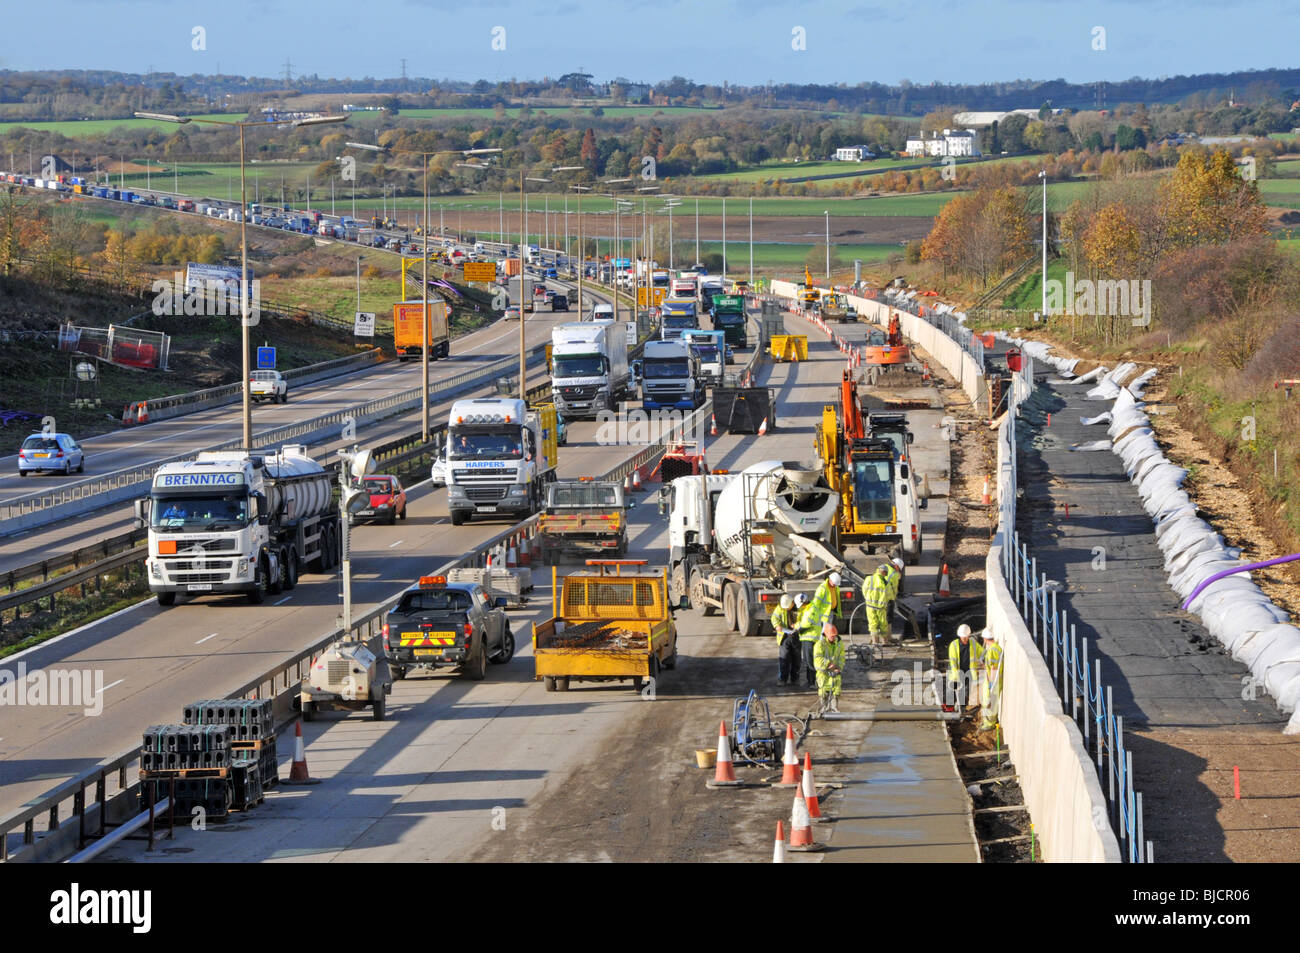 Ingegneria civile lavori stradali lavoratori edili e macchine che lavorano in cantiere M25 costruzione di un'autostrada a quattro corsie totale Essex paesaggio Inghilterra Regno Unito Foto Stock